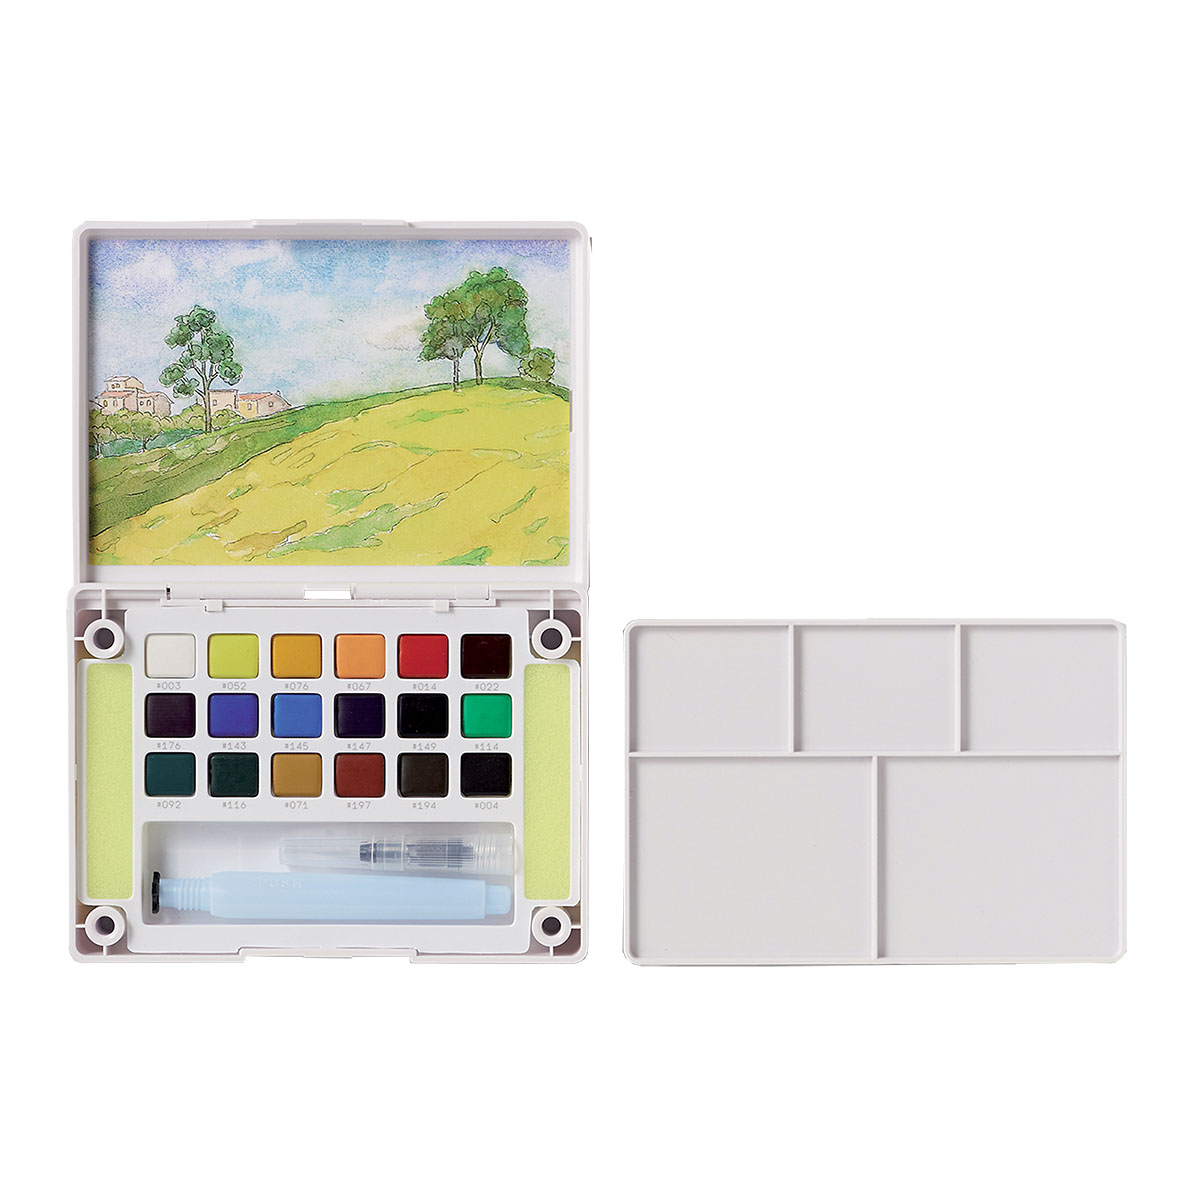 Målarset Koi Water Colors Sketch Box 18 + Pensel i gruppen Konstnärsmaterial / Färger / Akvarellfärg hos Pen Store (125612)